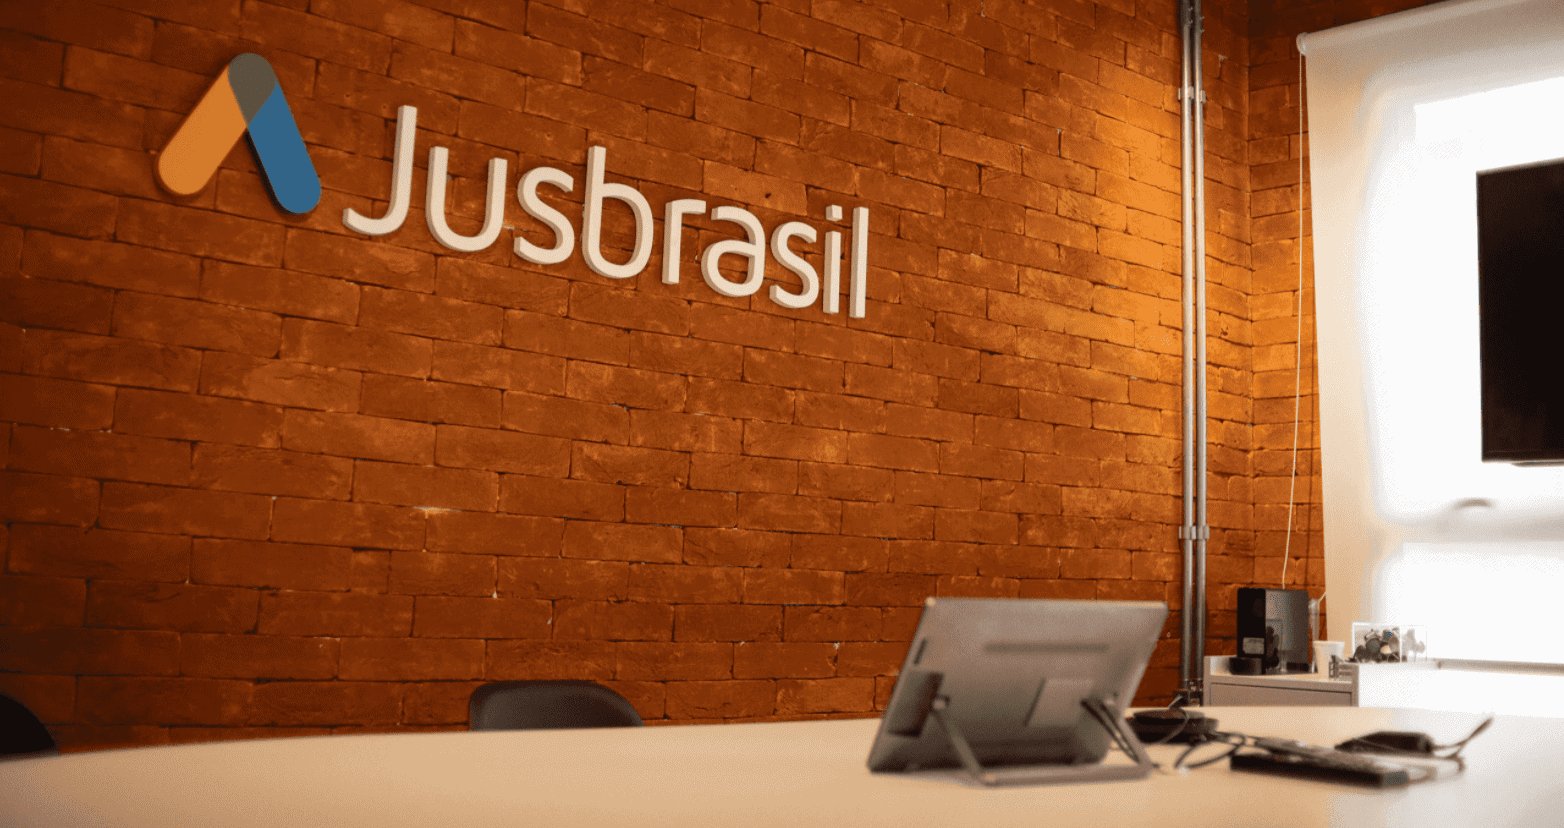 Na imagem, você vê uma foto da uma parada com a fachada e logo do jusbrasil, startup jurídica brasileira, que levantou mais de US$ 30 milhões em reodada Series C